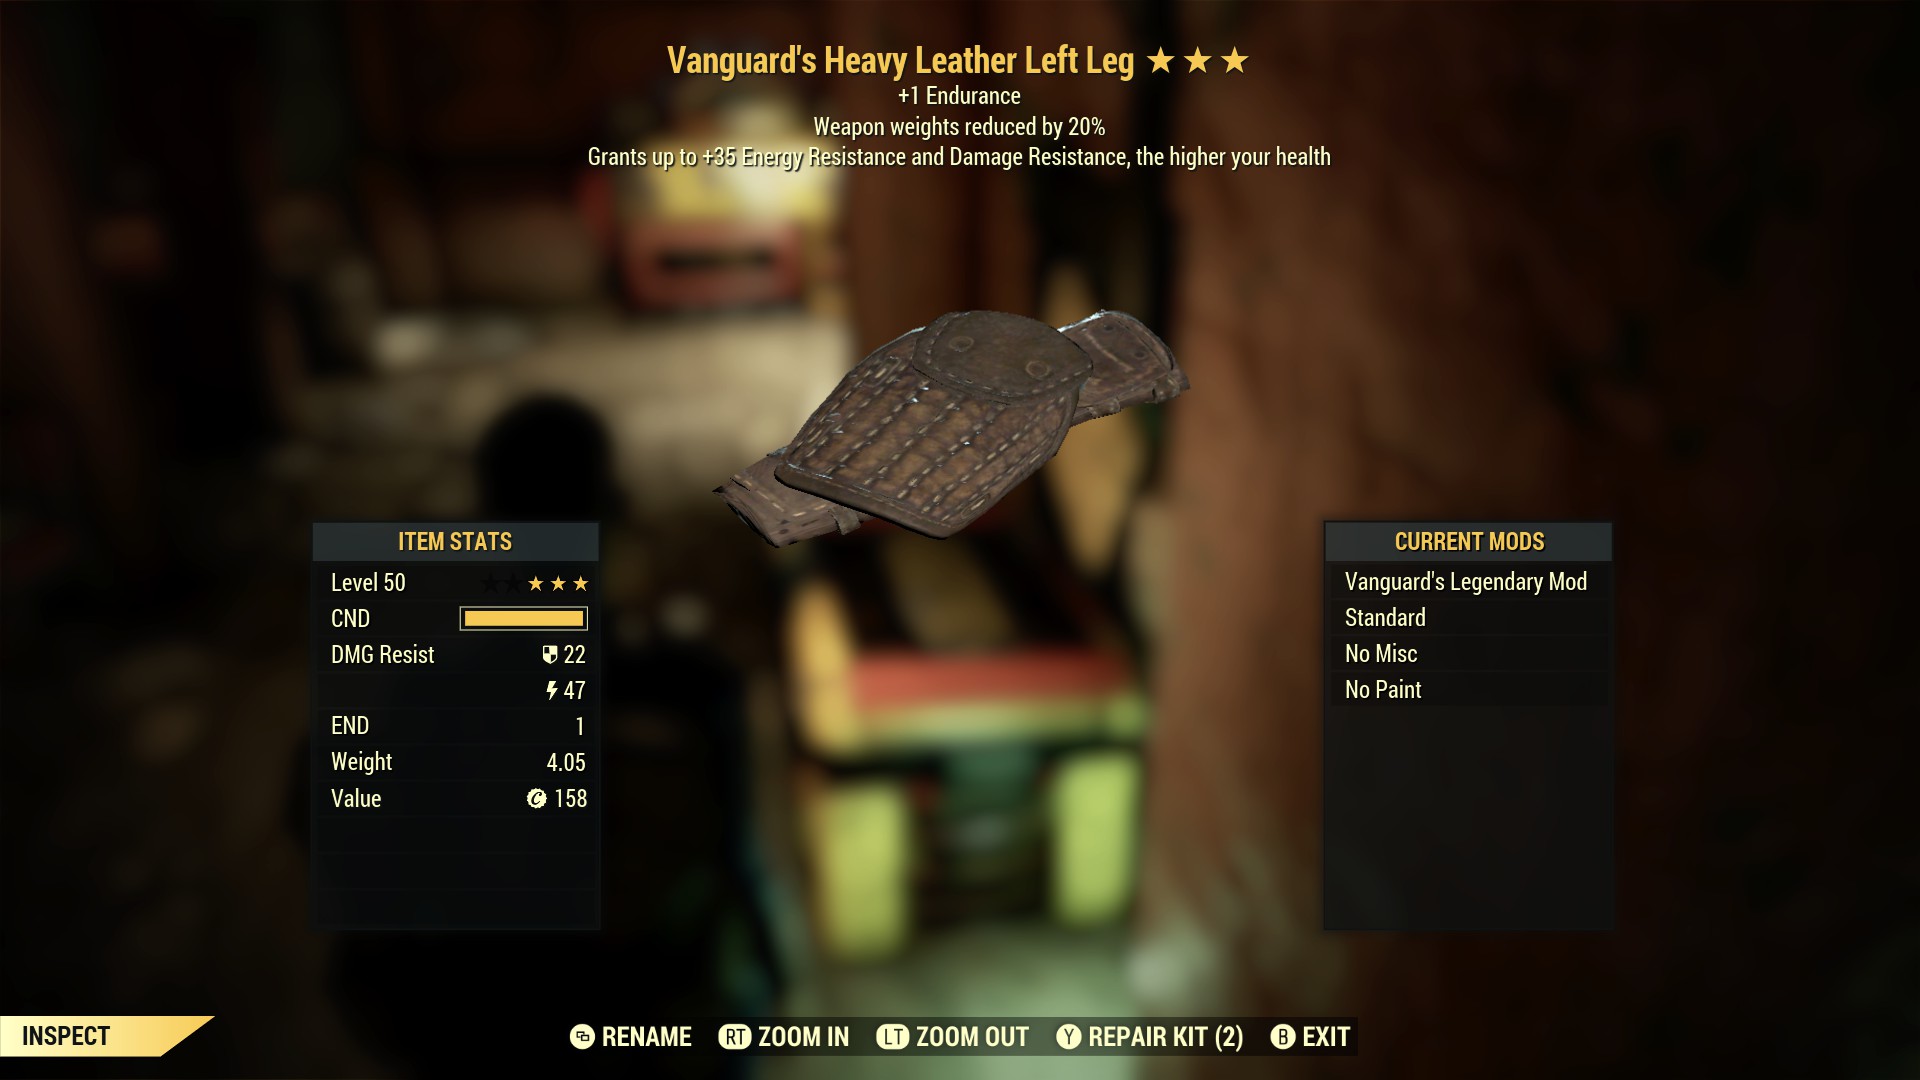 Vanguard's Heavy Leather Left Leg